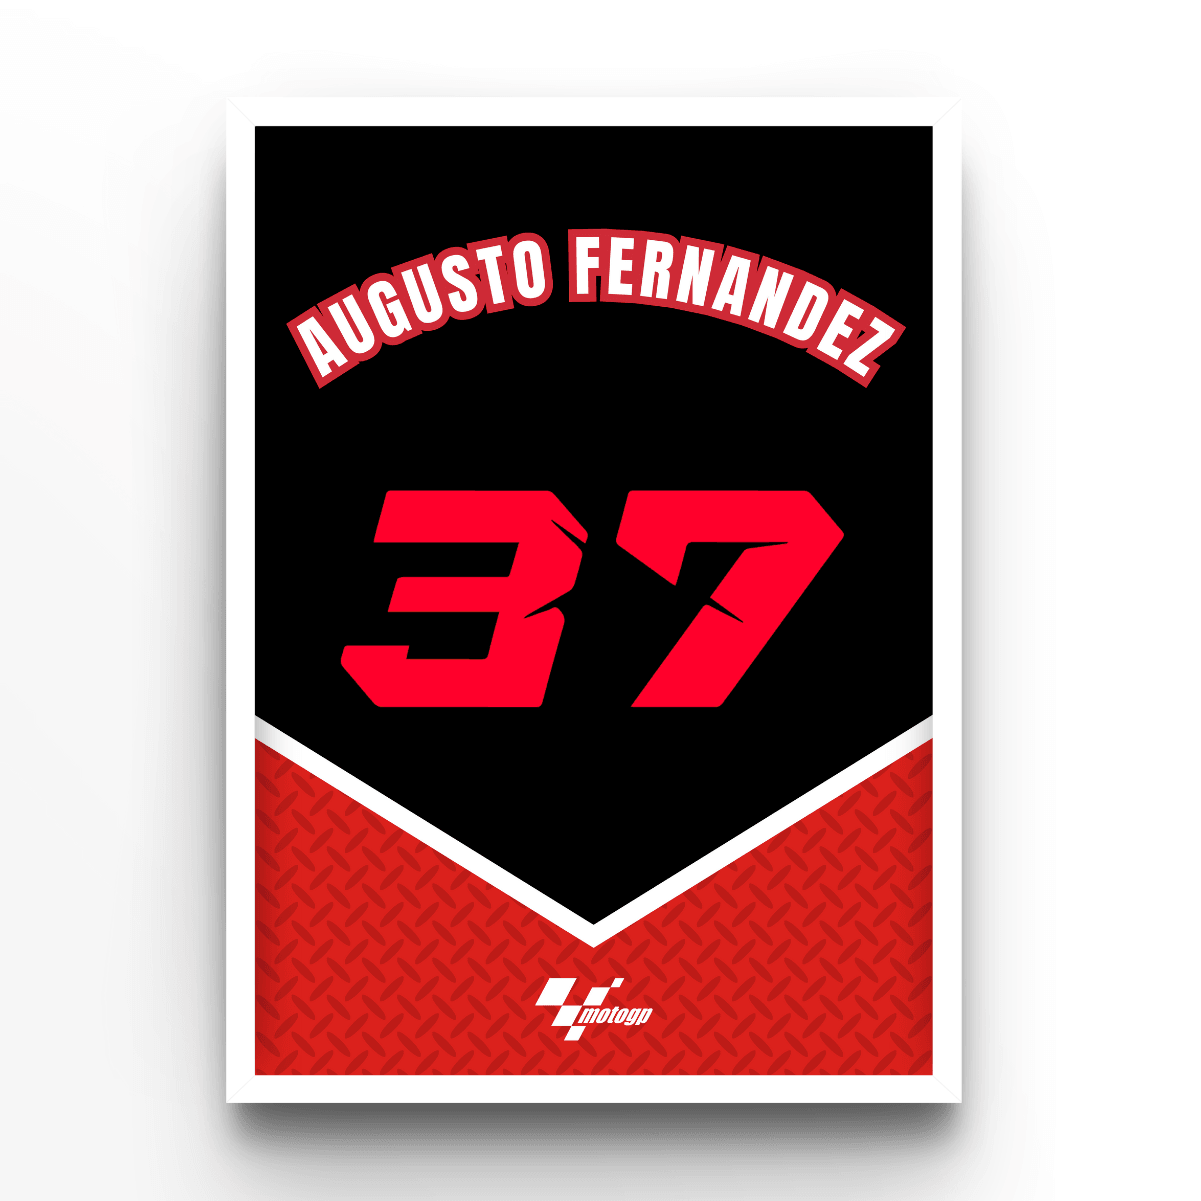 Augusto Fernández - A4, A3, A2 Posters Base - Poster Print Shop / Art Prints / PostersBase